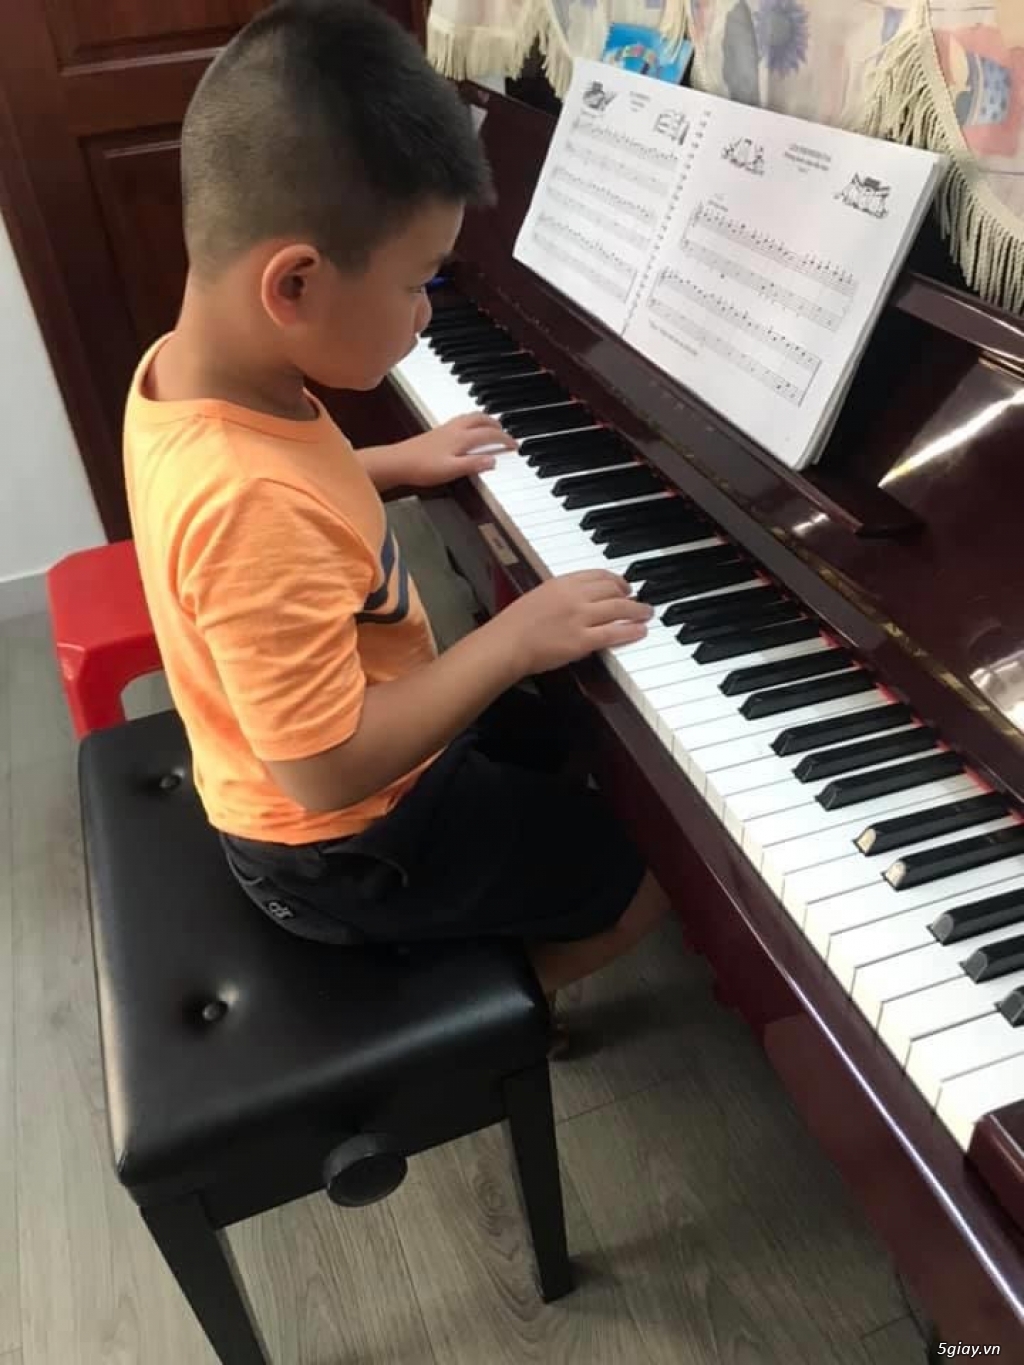 Khai Giảng Lớp Piano Organ hè 2020 Khuyến Mãi Bất Ngờ - 2